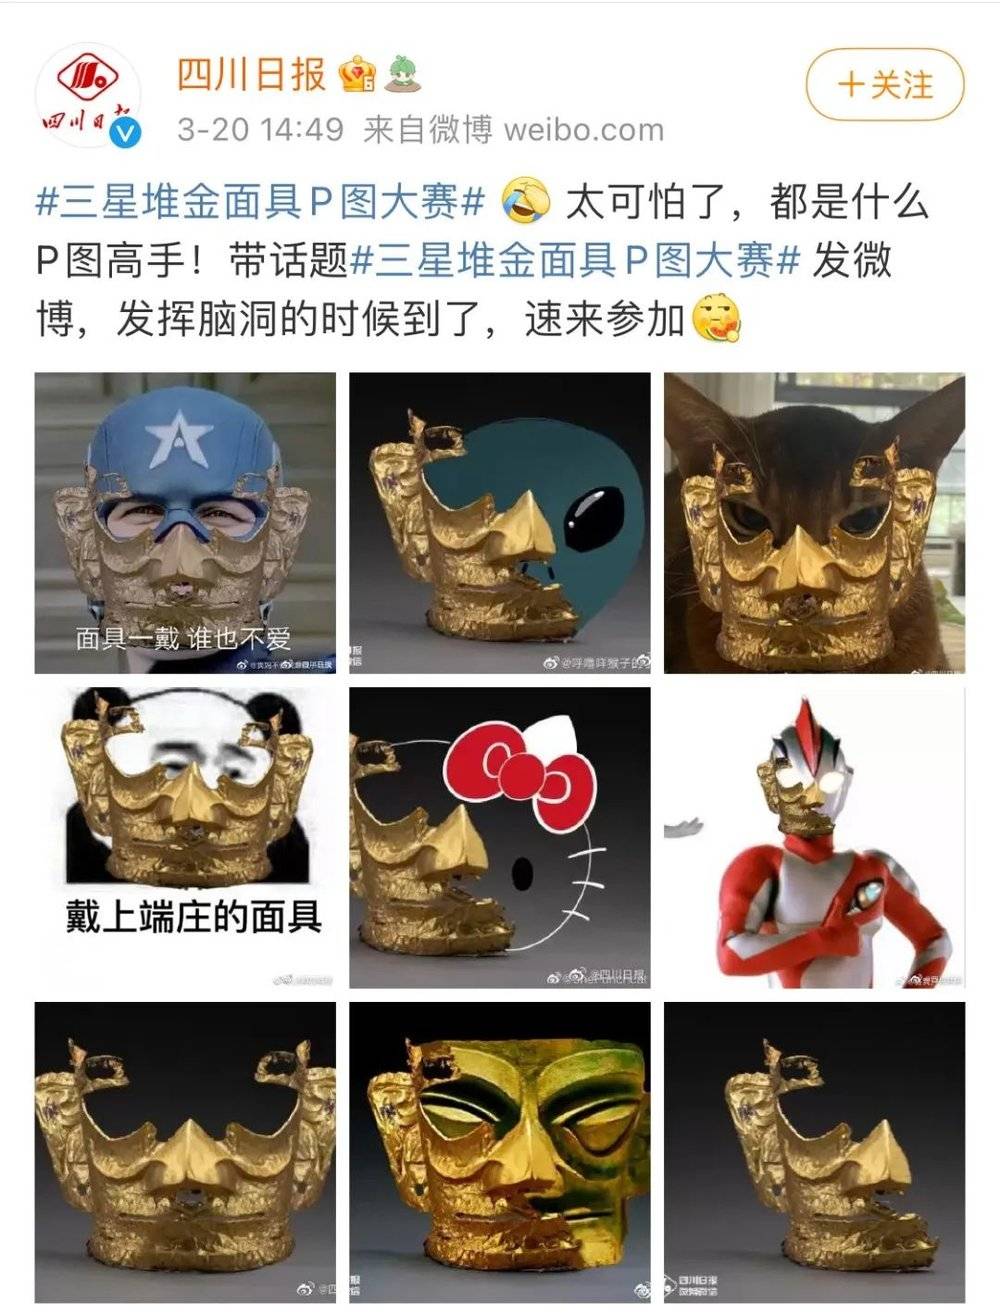 网友制作的金面具表情包 图片来源：《四川日报》微博